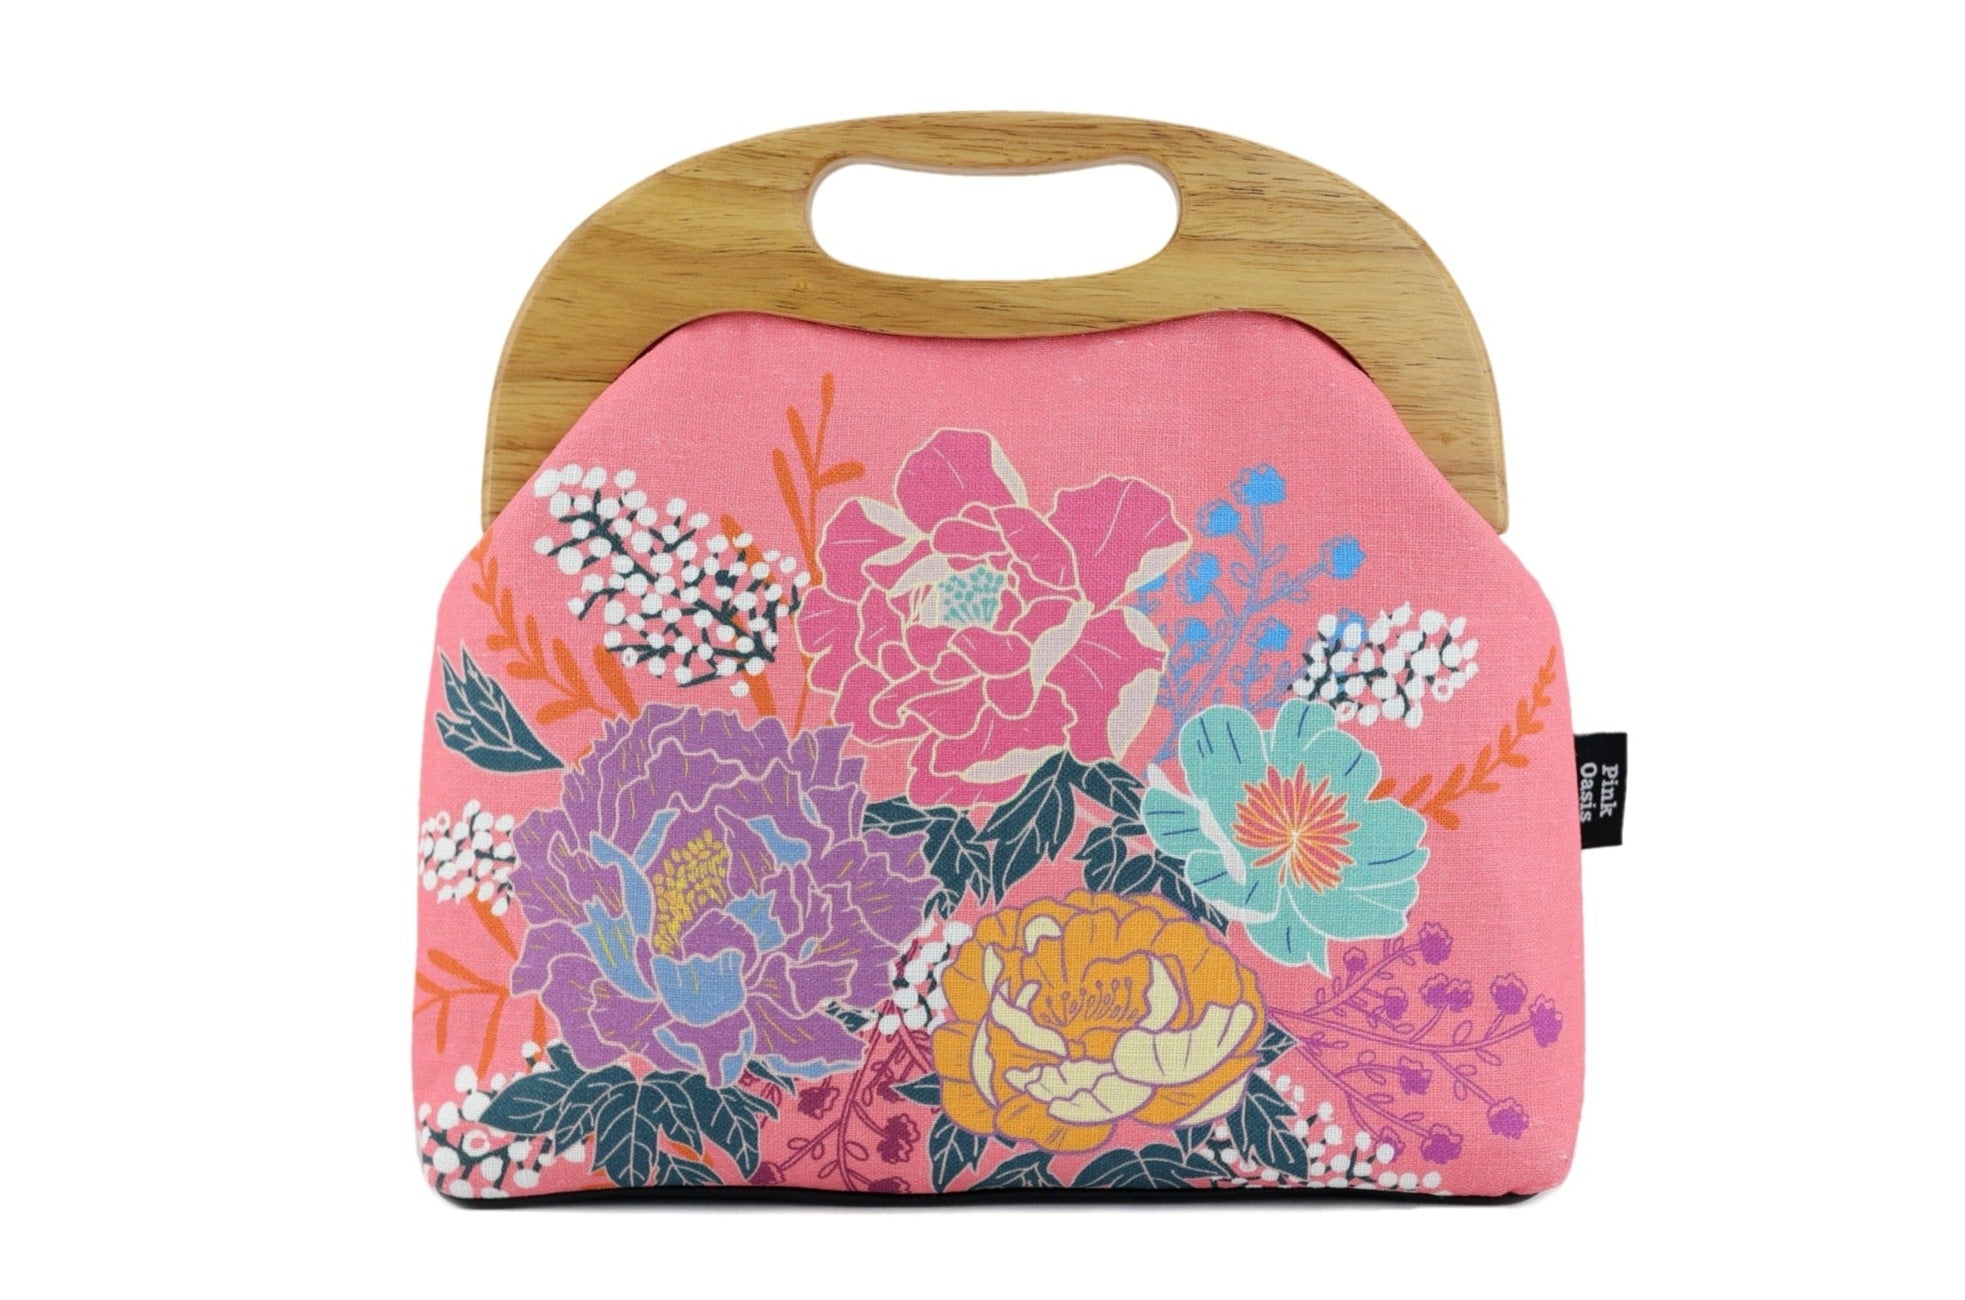 Peonies Garden Pink Large Wood Frame Bag | PINK OASIS